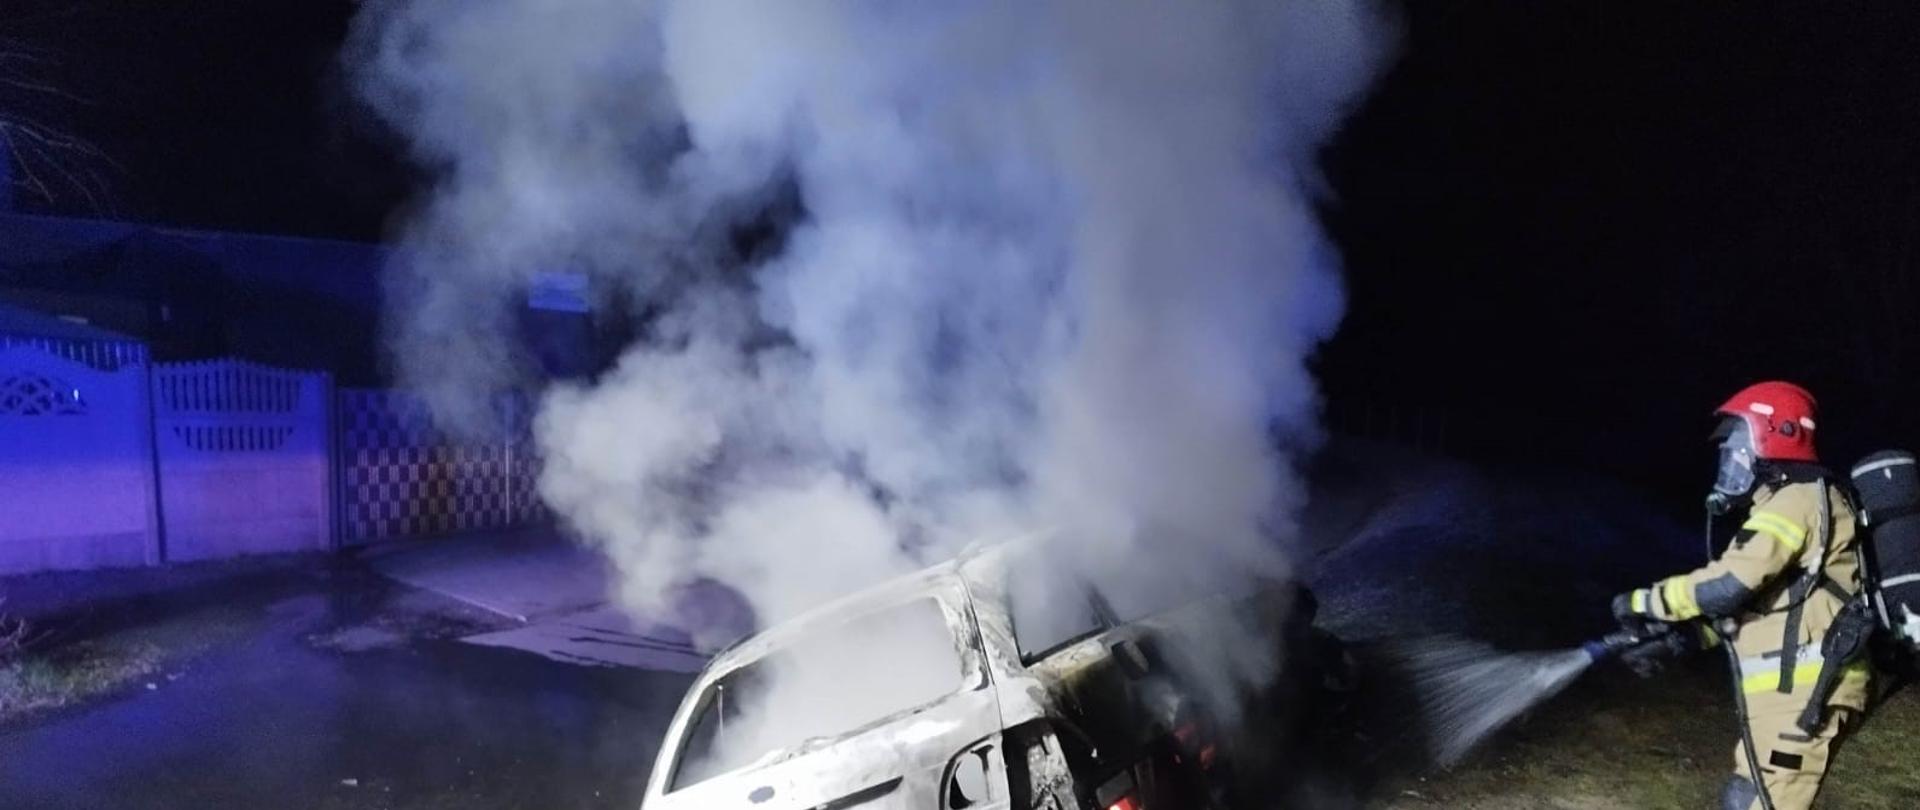 Zdjęcie przedstawia strażaka podającego prąd gaśniczy na pojazd, który objęty jest pożarem.